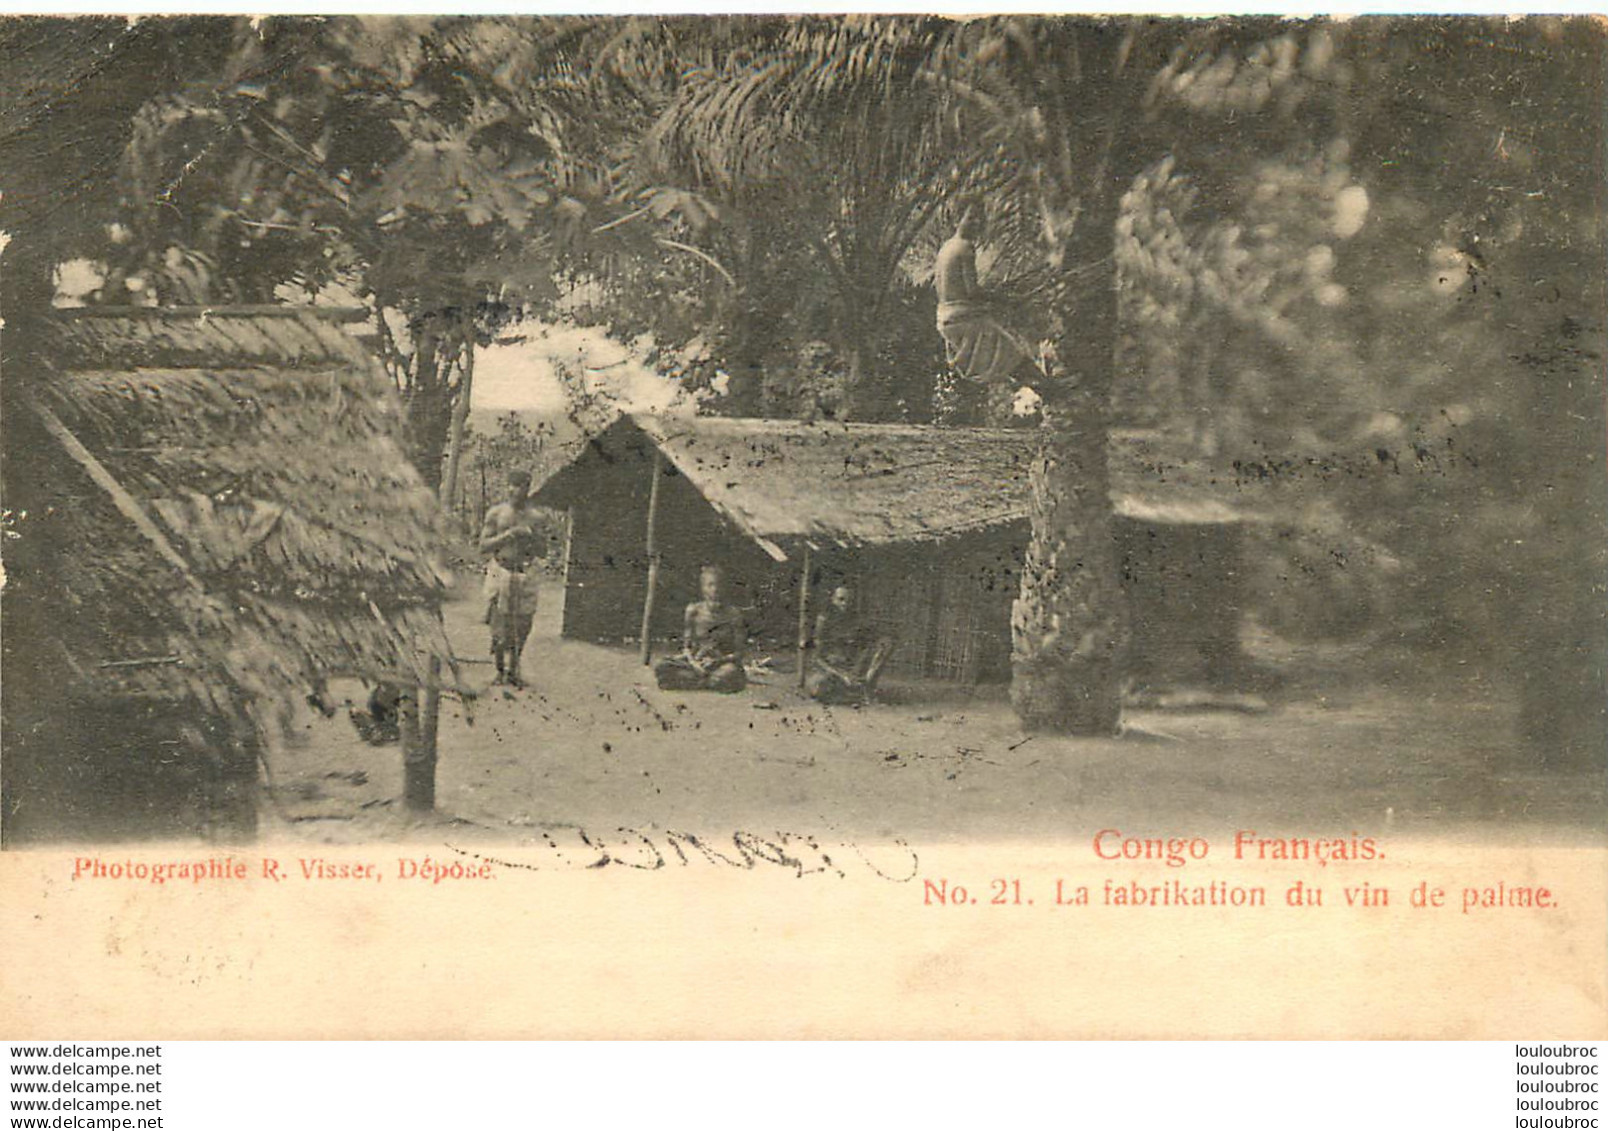 CONGO FRANCAIS LA FABRIKATION DU VIN DE PALME  EDITION VISSER - French Congo